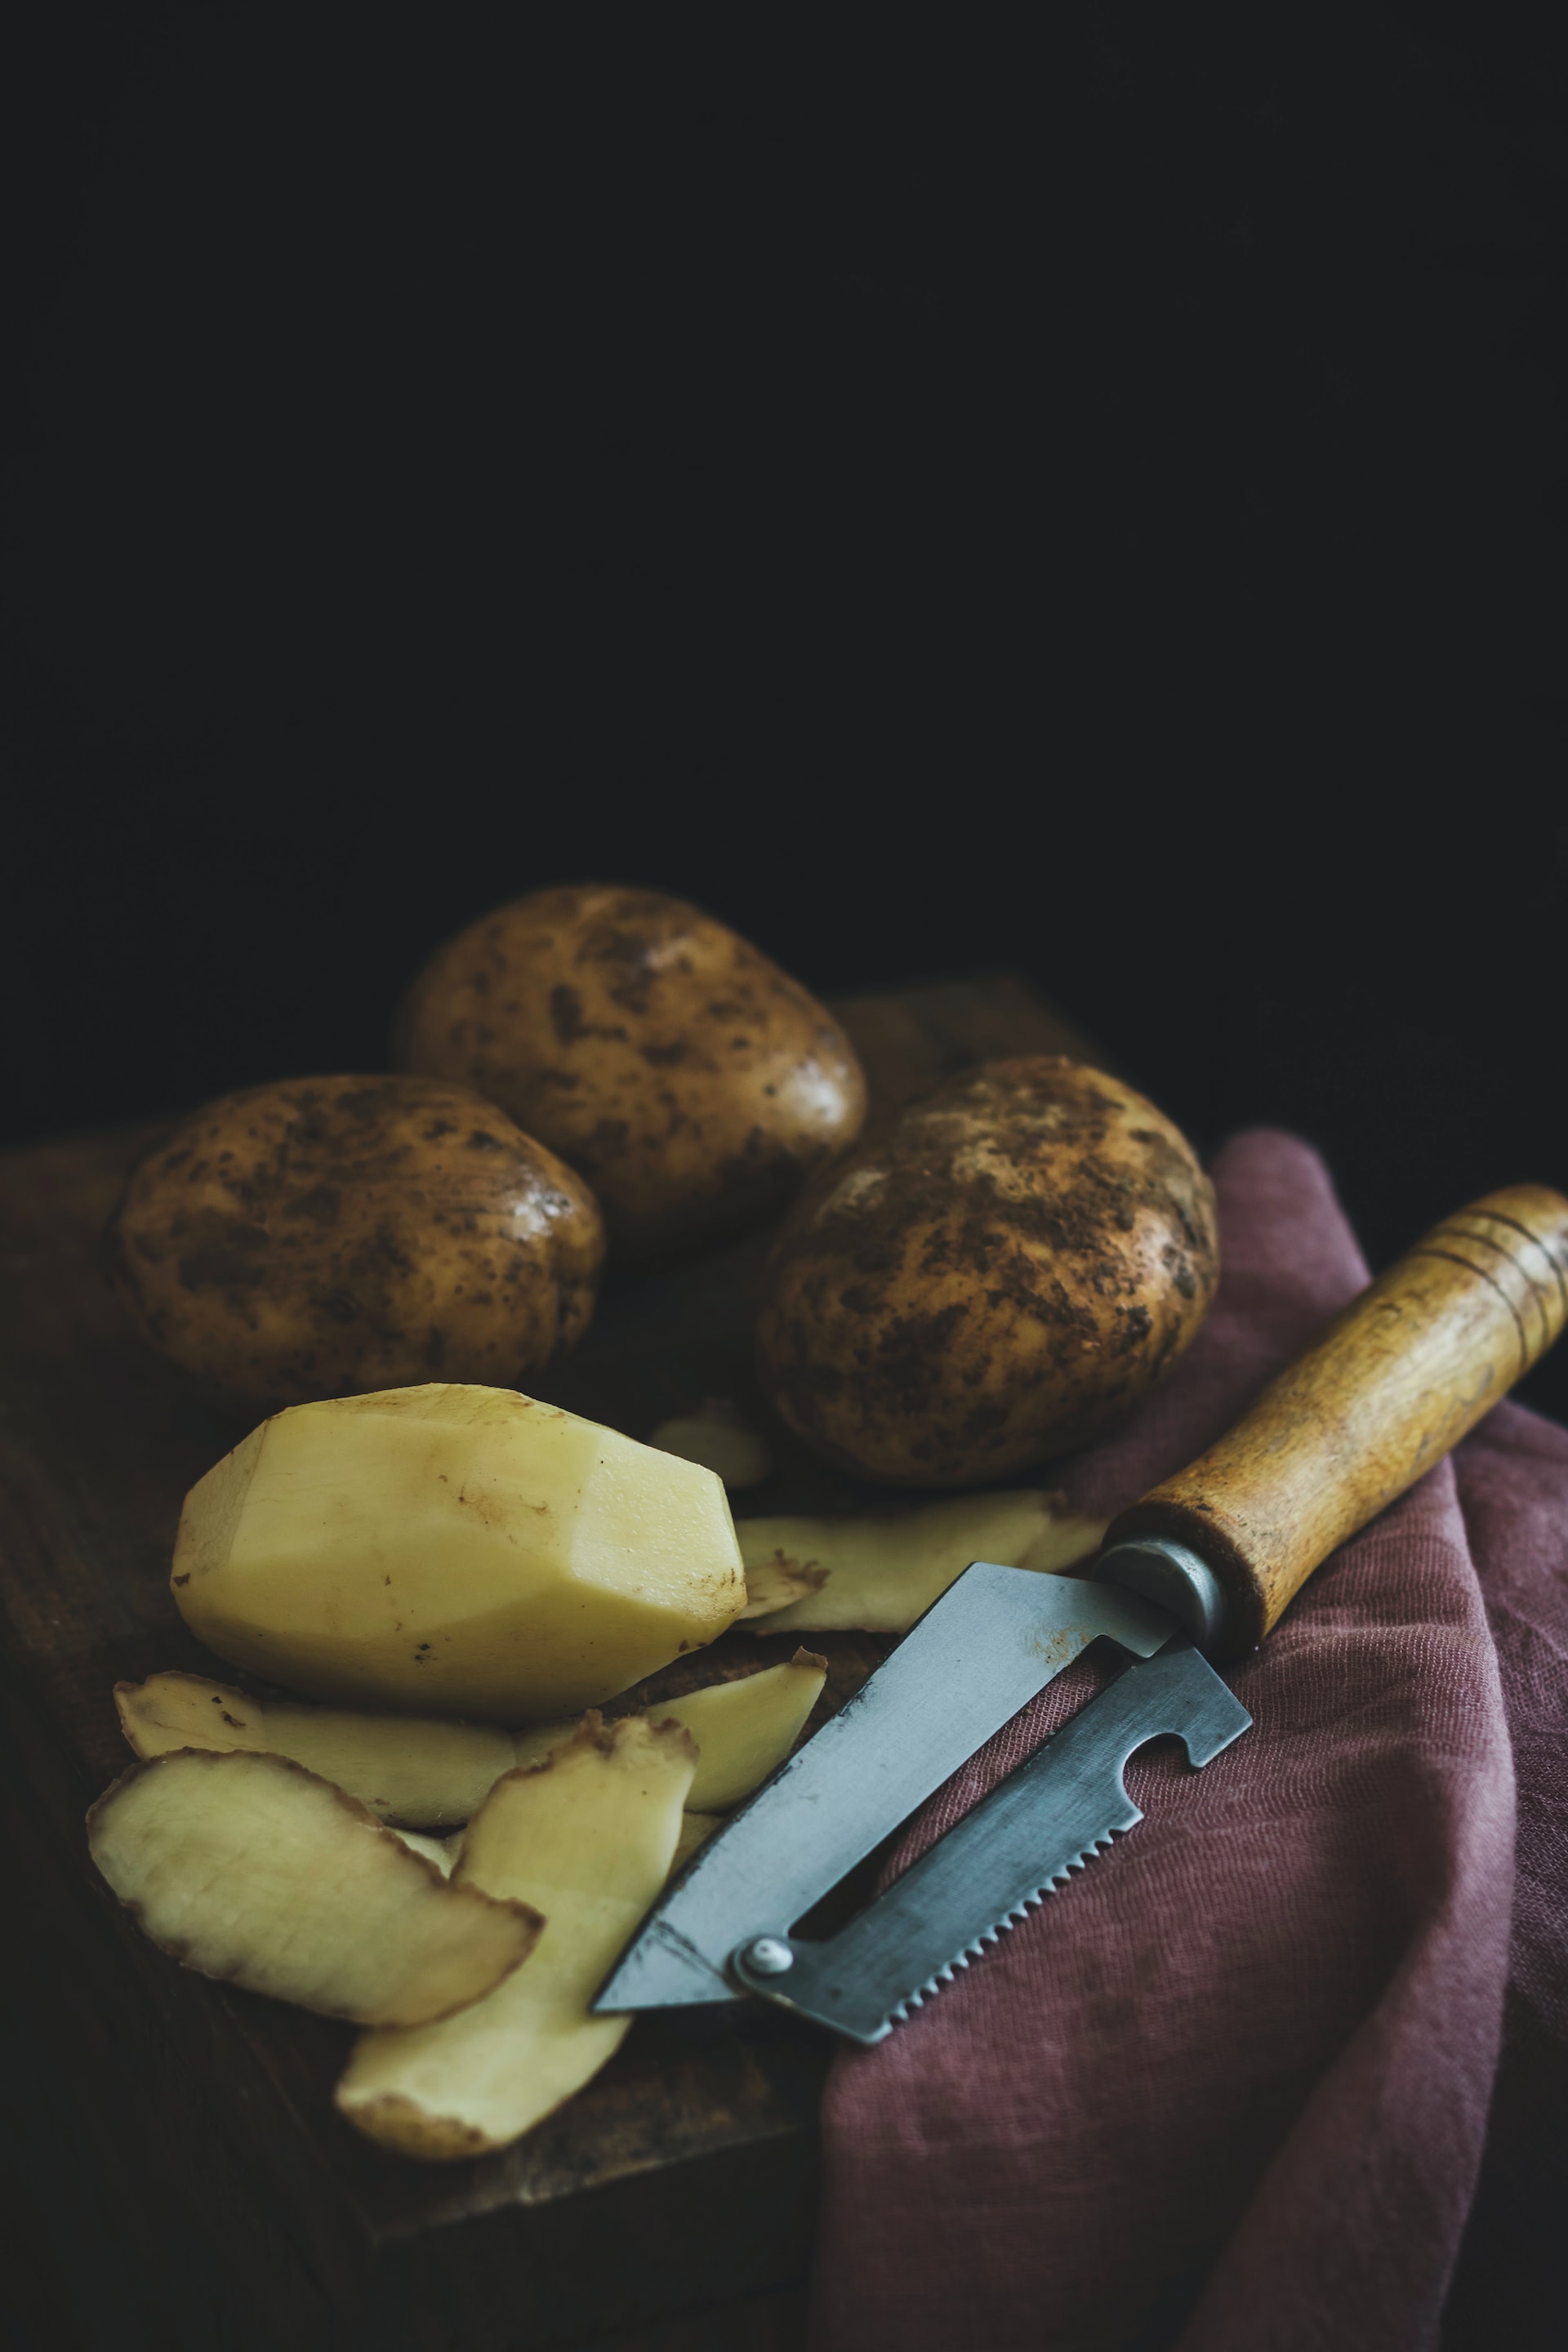 Πώς να αποθηκεύεις σωστά τις πατάτες στην κουζίνα σου για να μη βγάζουν γρήγορα ρίζες